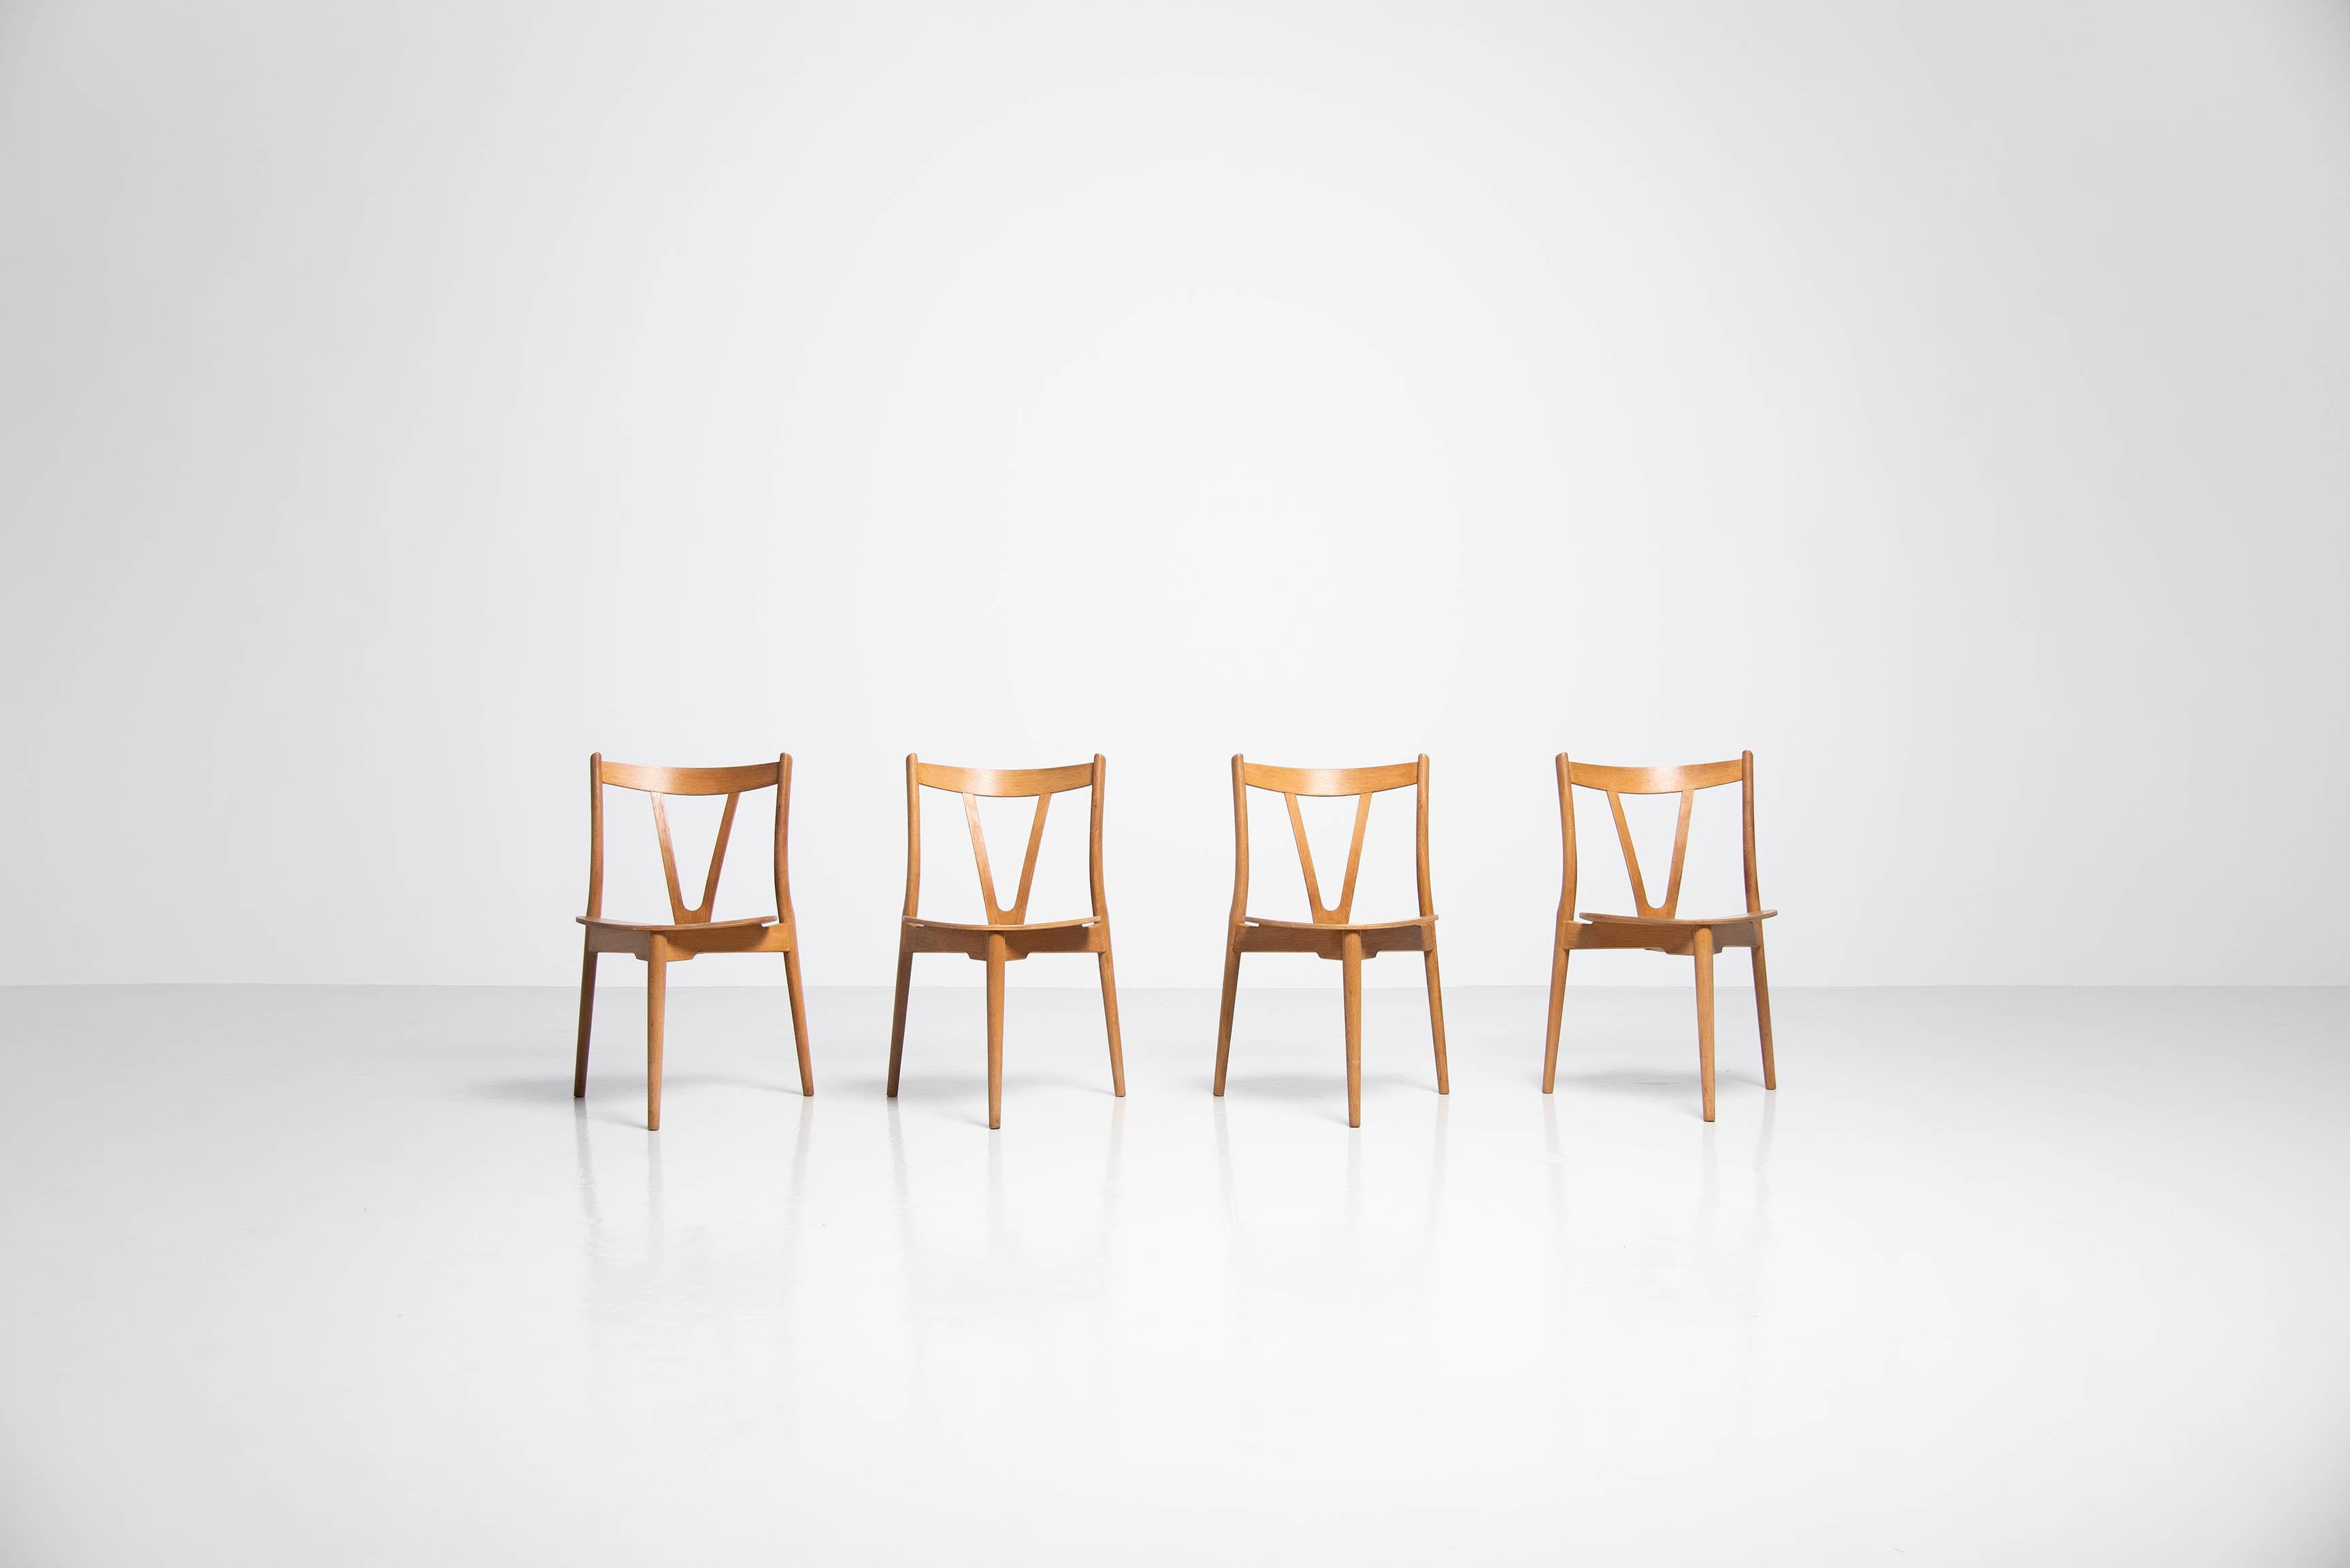 Seltener Satz von 4 Stühlen Modell PP51/3 oder der so genannte V-Stuhl, entworfen von Hans J. Wegner und hergestellt von PP Mobler, Dänemark 1988. Zwischen 1952-53 entwarf Wegner seine beiden berühmtesten dreibeinigen Stühle, den Valet Chair und den